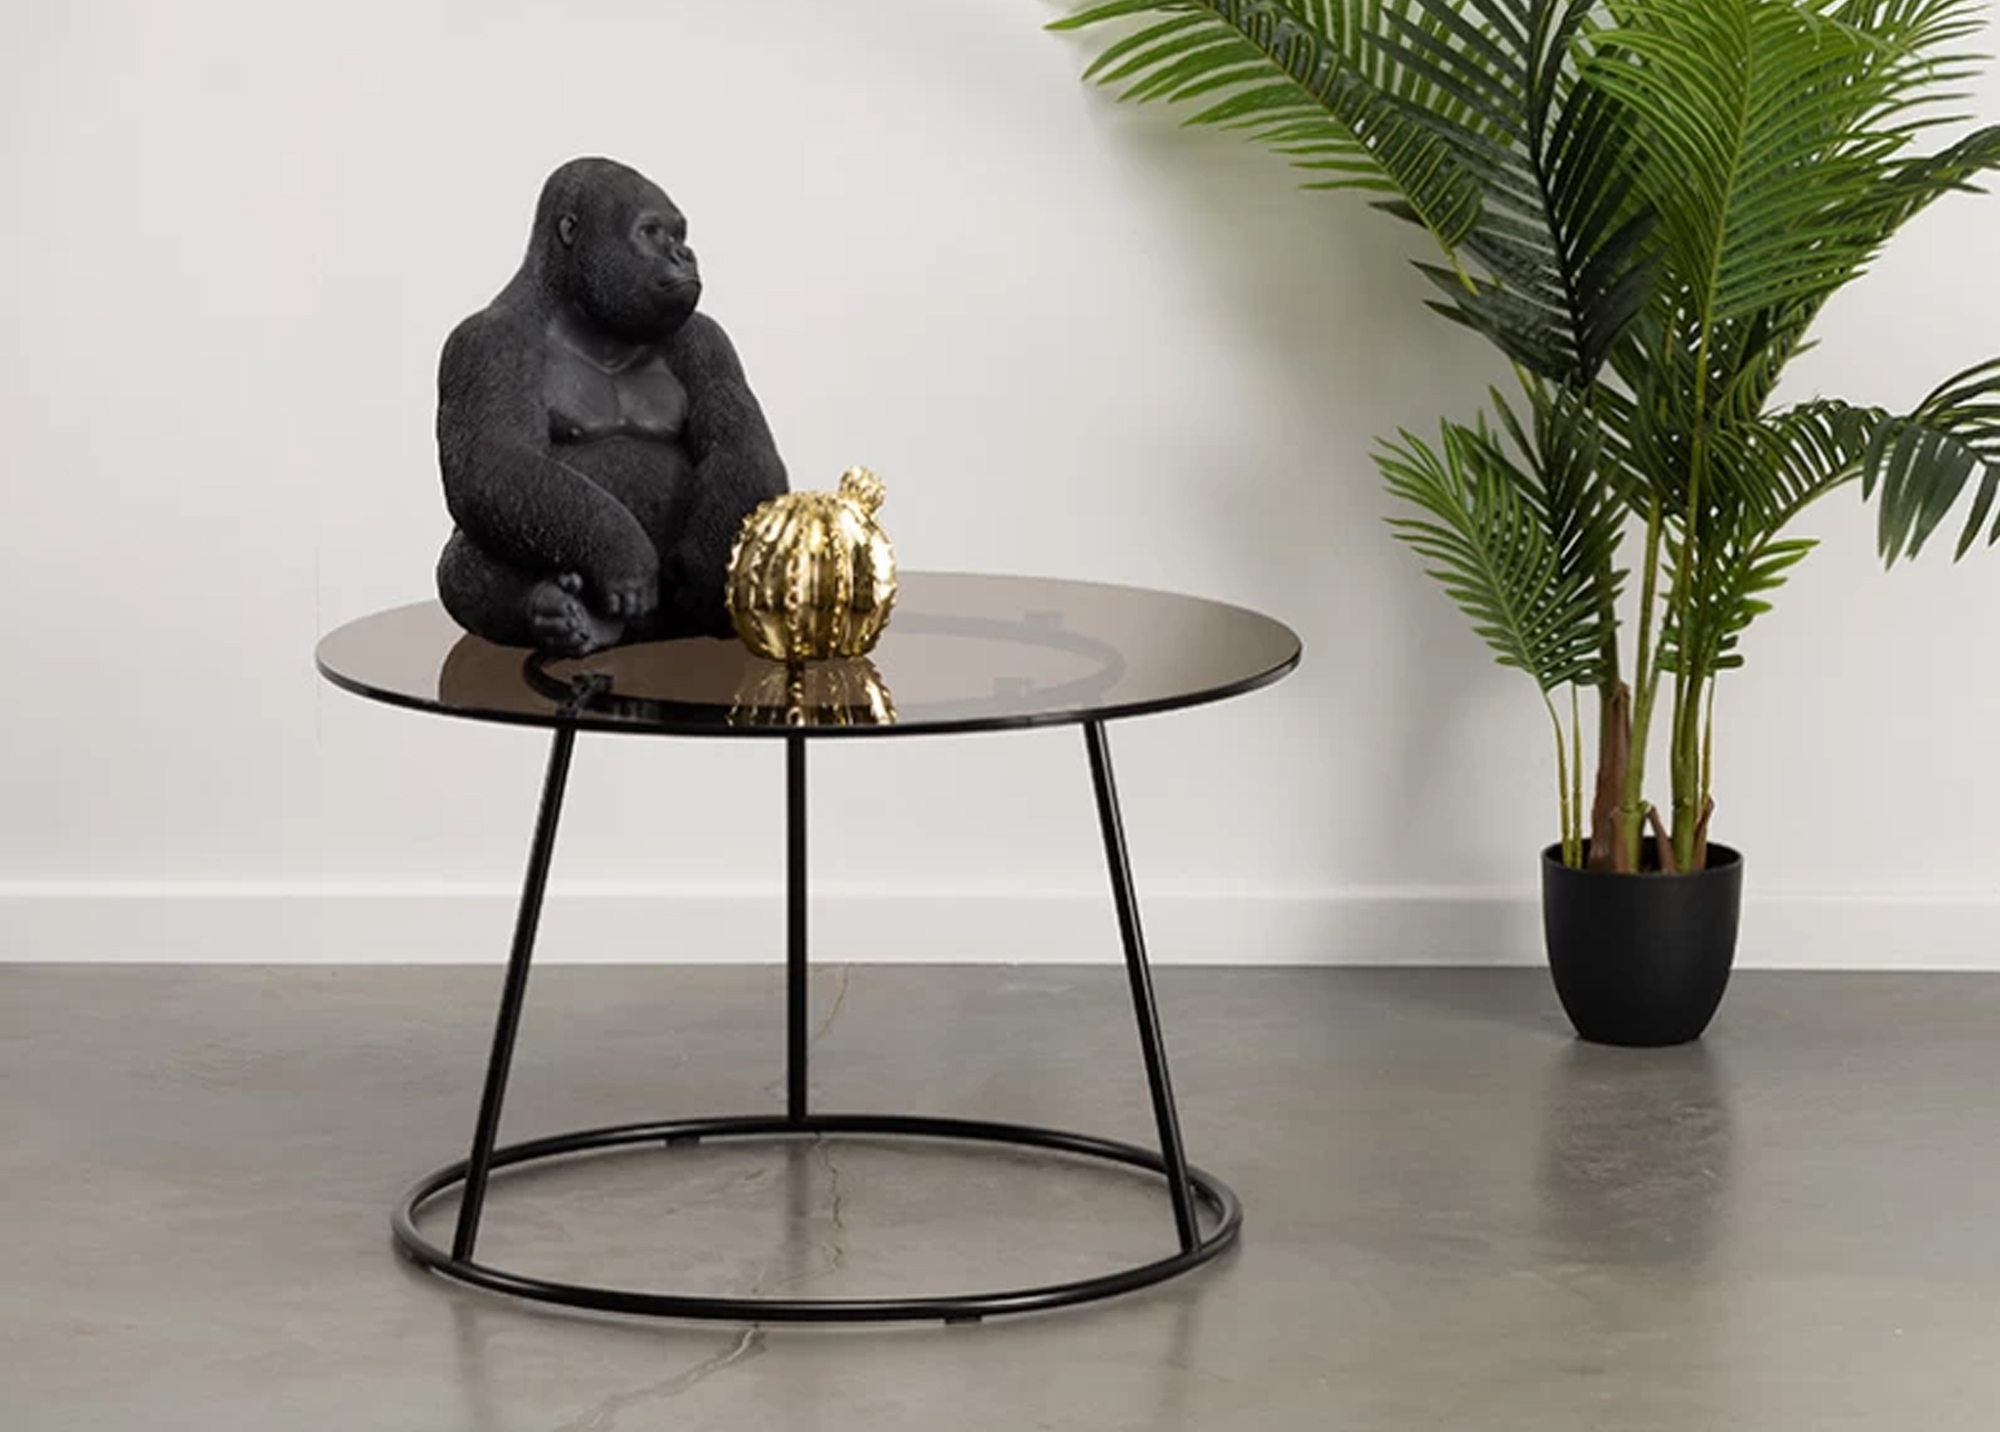 Svetainės baldai | MAGRĖS BALDAI apvalus stiklinis kavos staliukas, žurnalinis staliukas svetainei, valgomajam, biurui TITAN